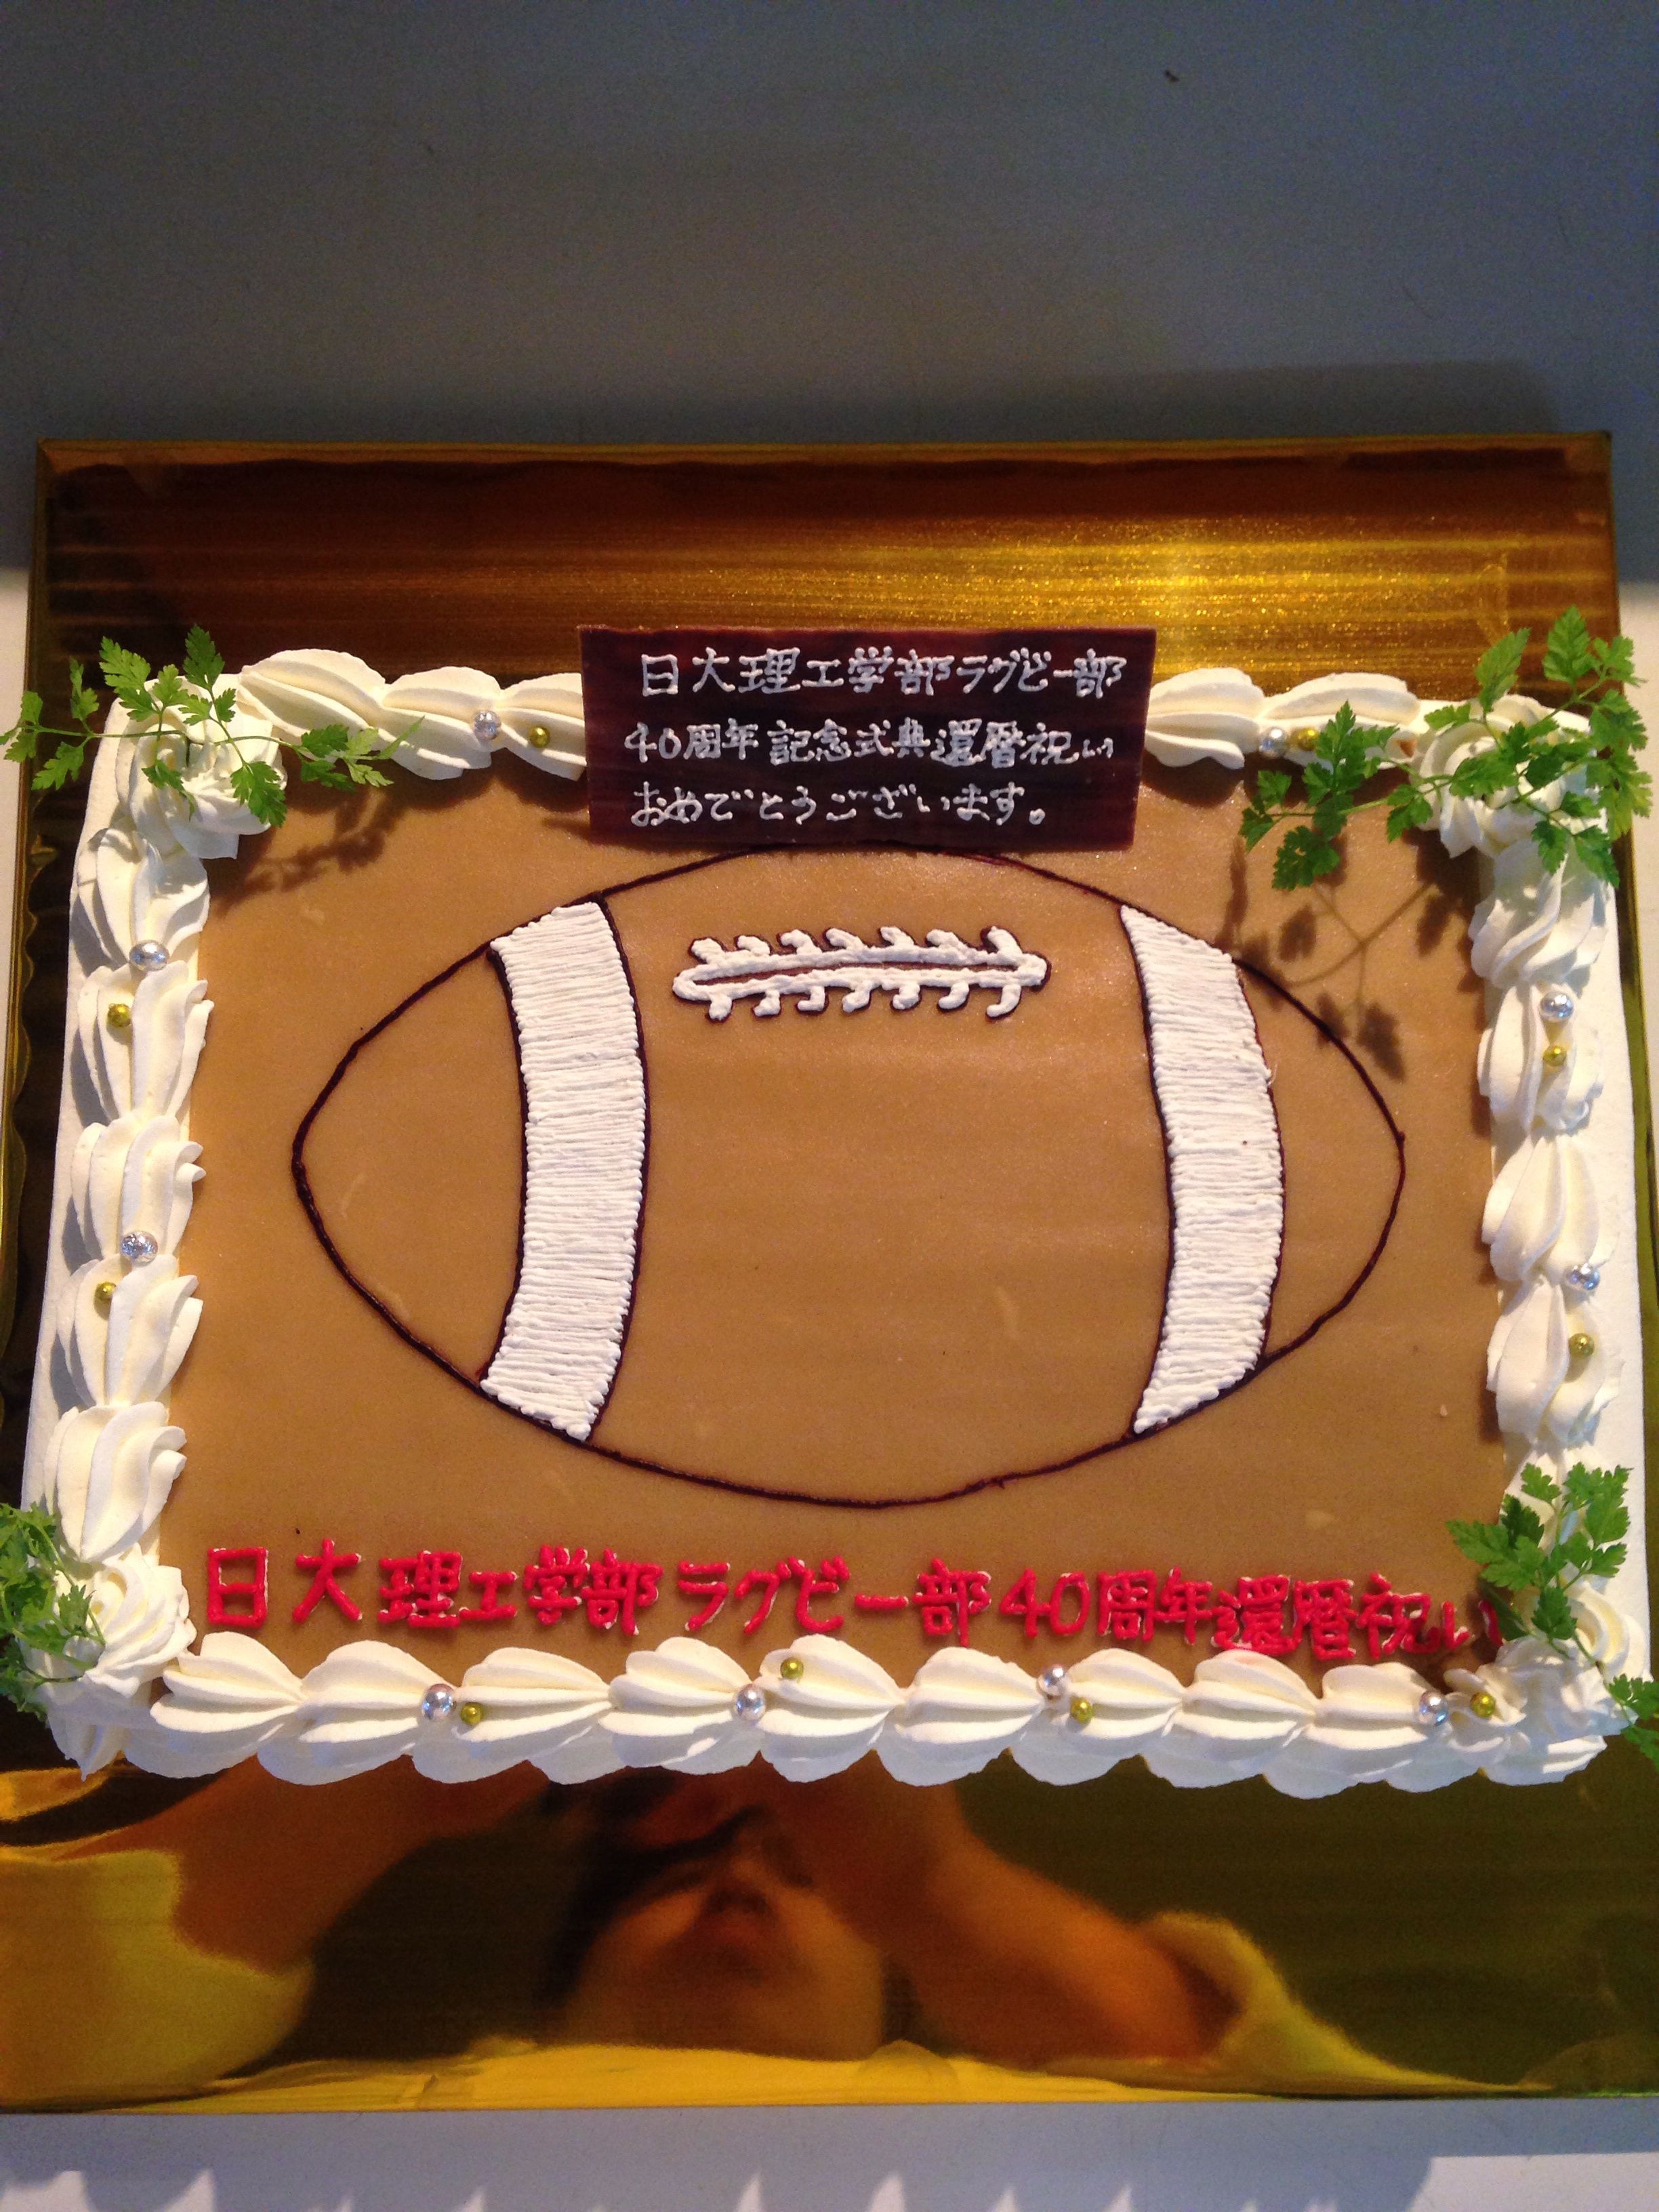 野球サッカースポーツケーキ の記事一覧 デコレーションケーキのデリバリーショップ 楽天ブログ